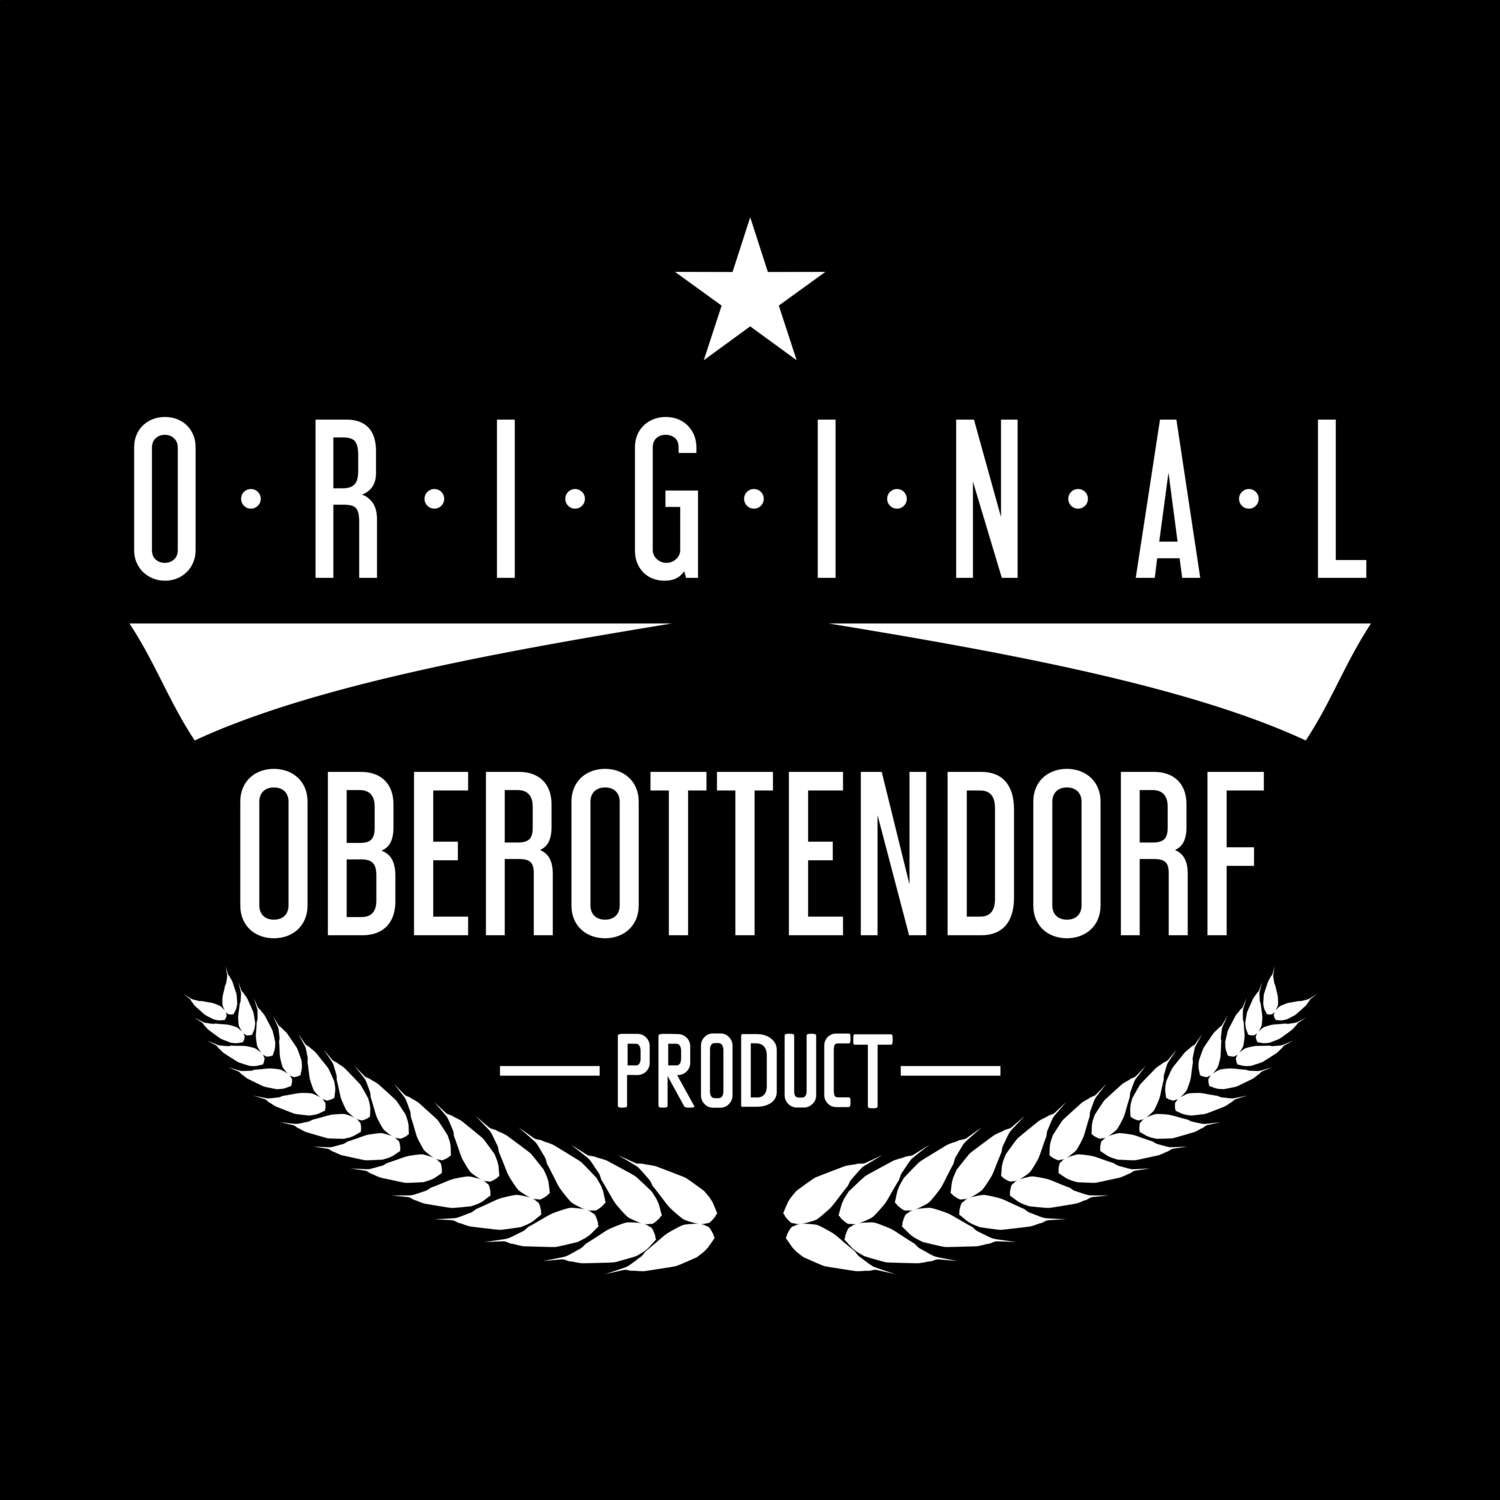 Oberottendorf T-Shirt »Original Product«